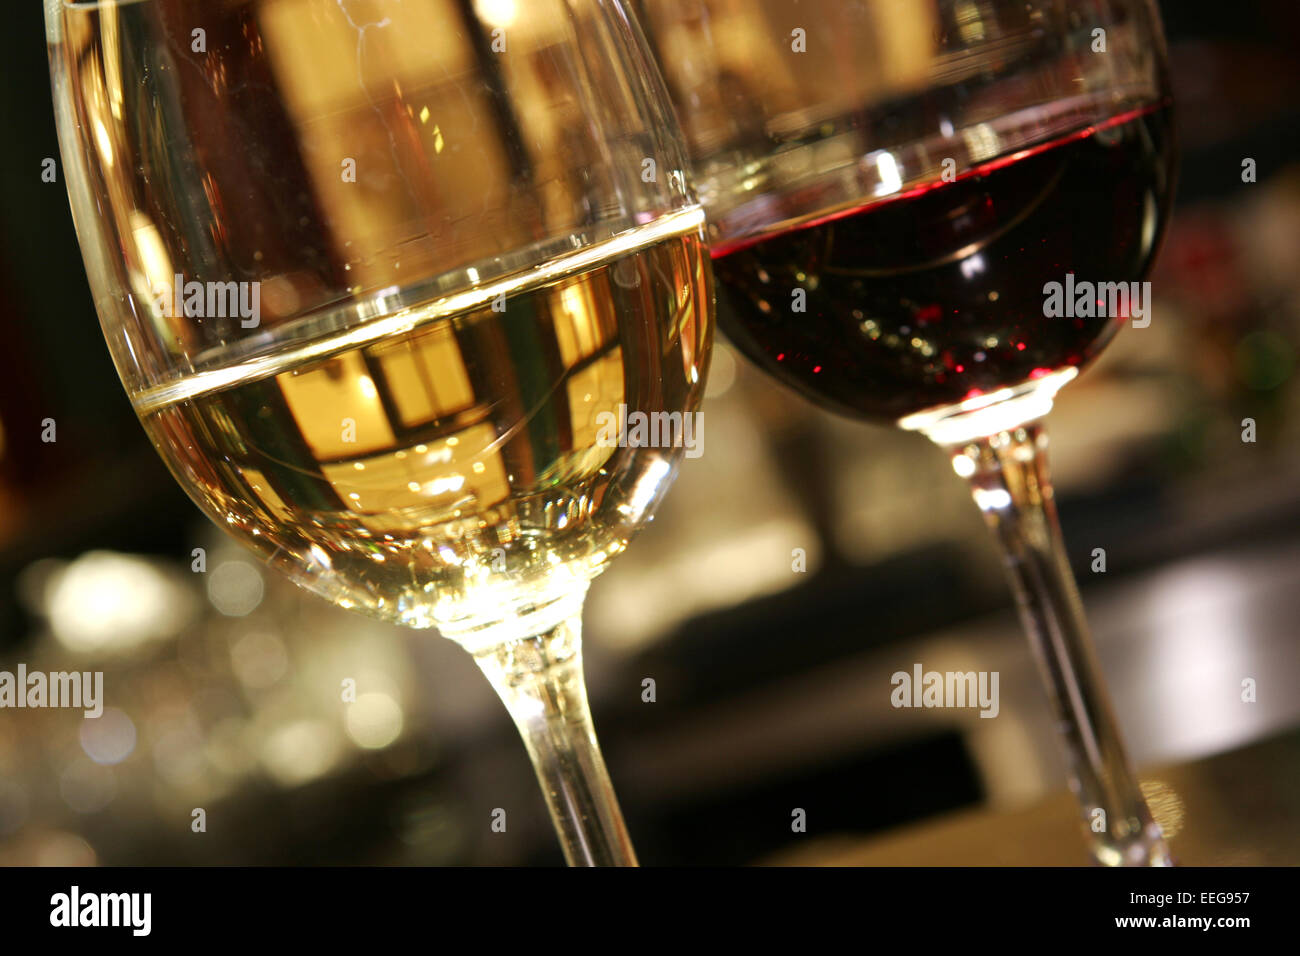 Wein, Weisswein, Rotwein, Glas, Weinglas, Trinken, Alkohol, Getraenke, Weine Stock Photo